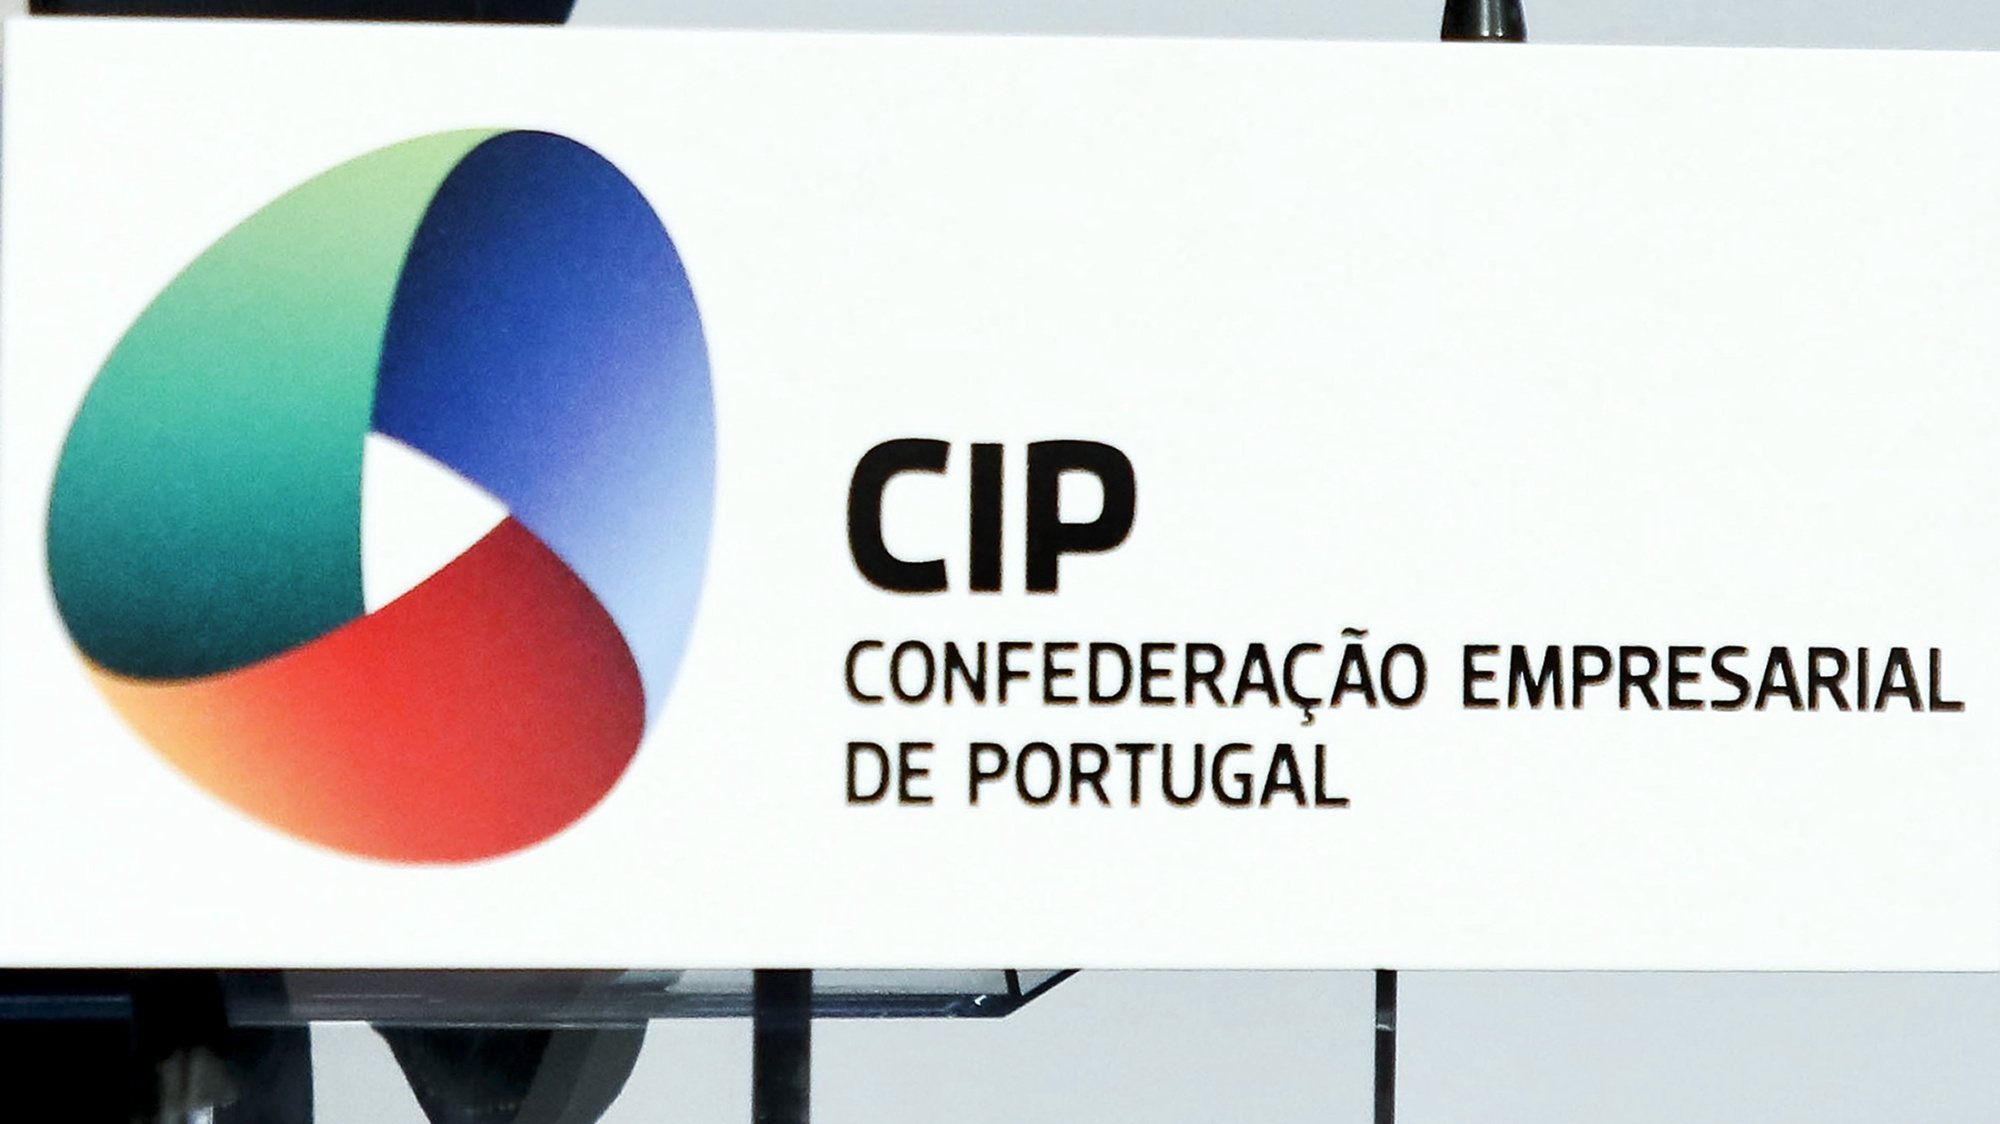 CIP - Confederação Empresarial de Portugal, no Centro de Congressos de Lisboa, 23 de fevereiro de 2017. LUSA